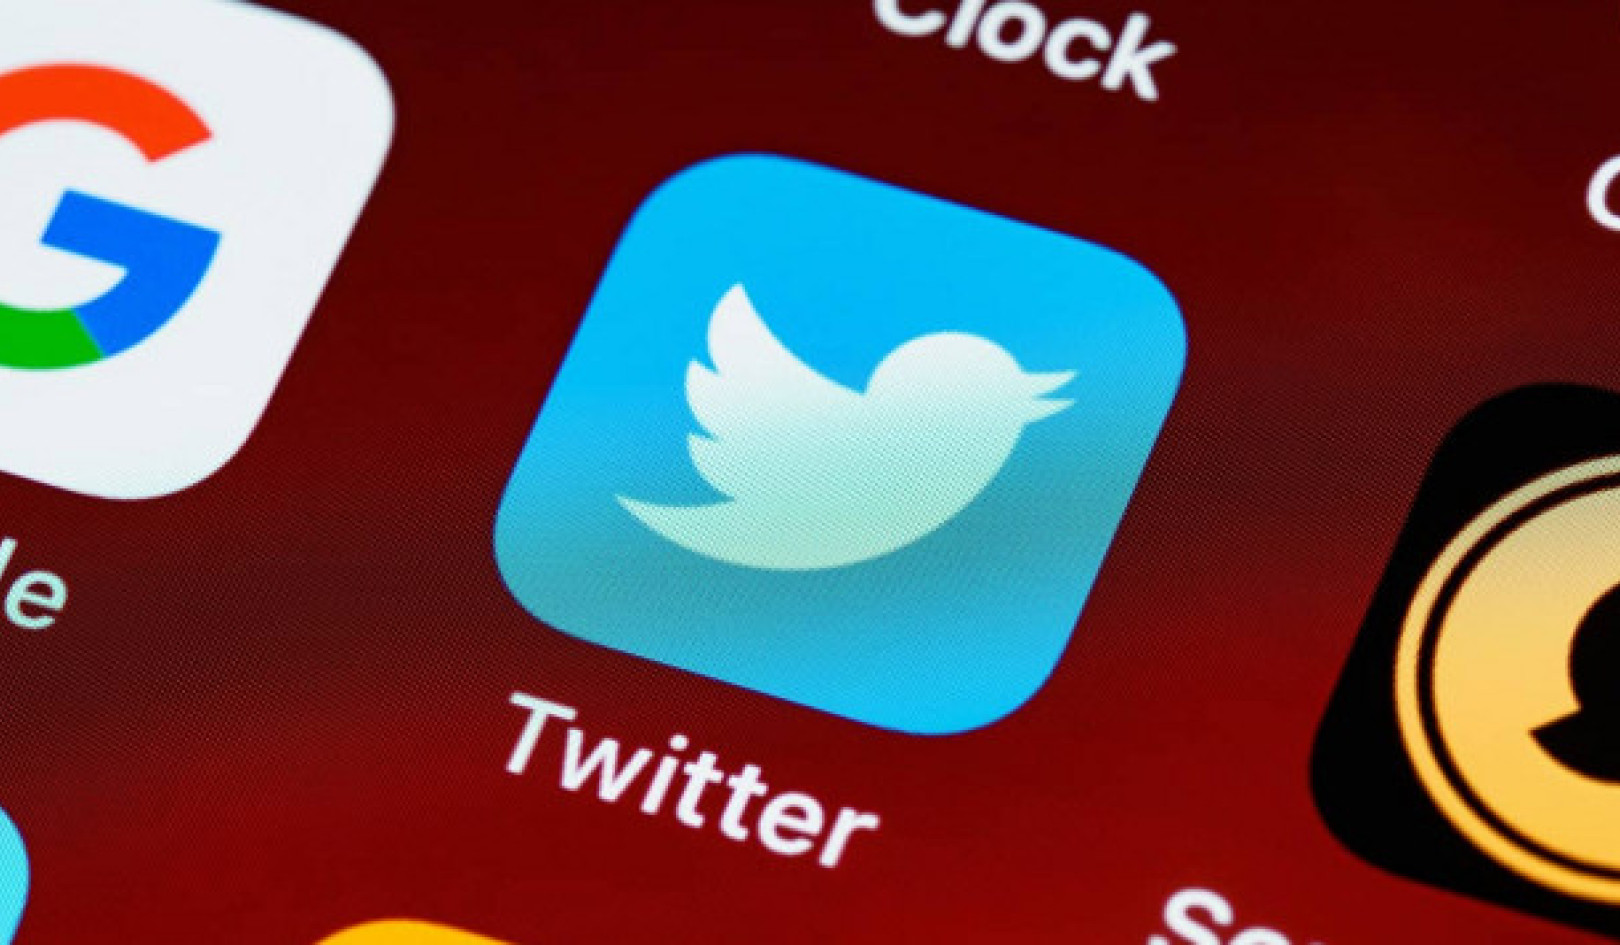 Політичні лідери в Twitter: контрастні тенденції щодо ненадійного контенту